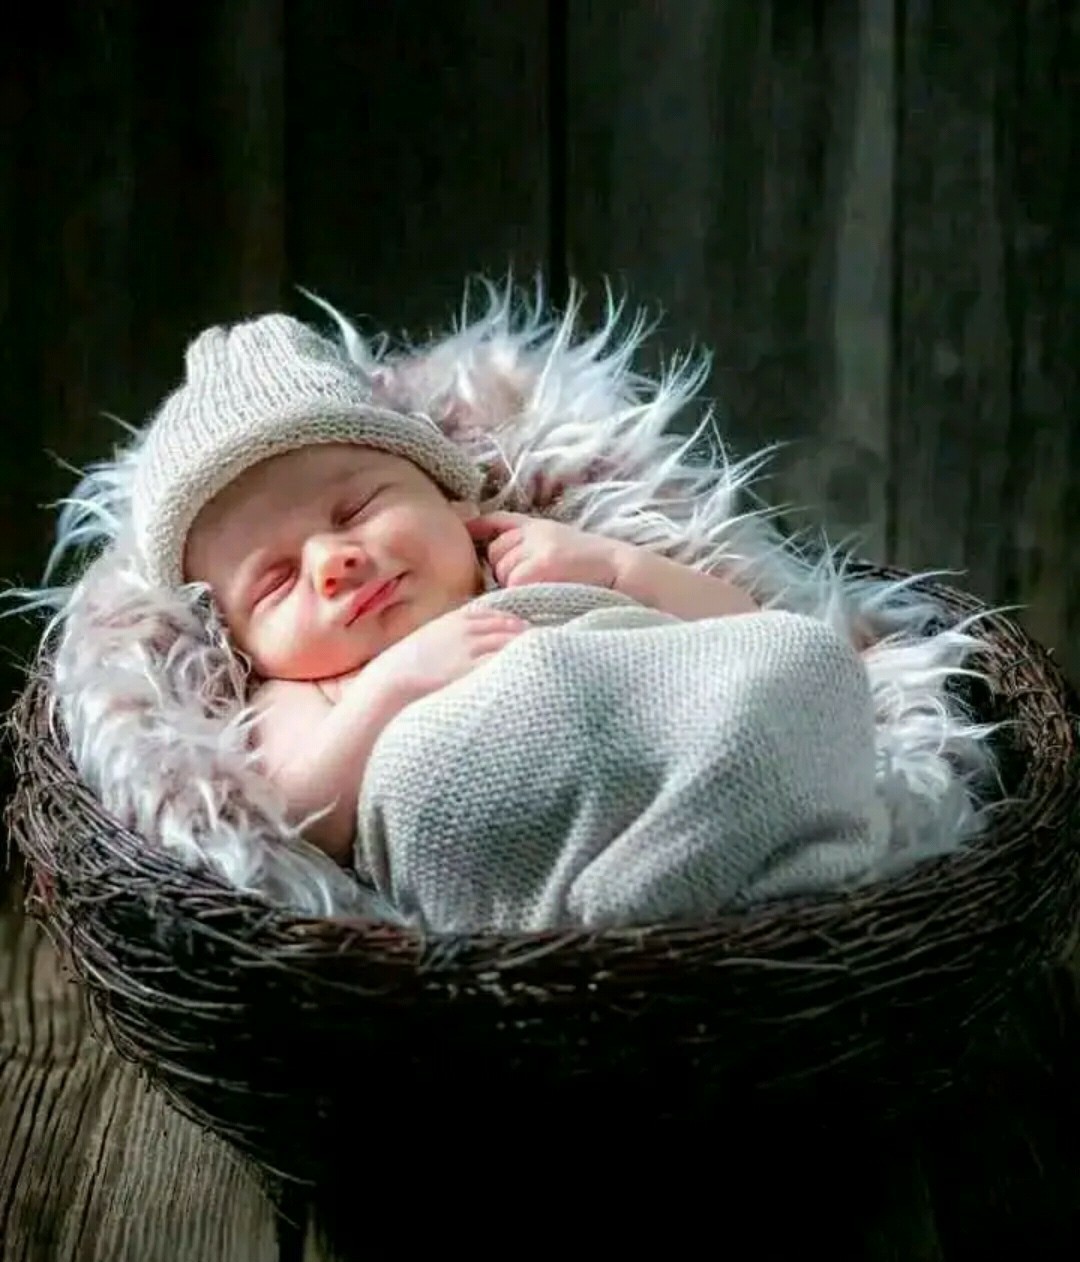 Cute Sleeping Baby Baby Wallpaper Image - Cute Sleeping Of Baby - HD Wallpaper 